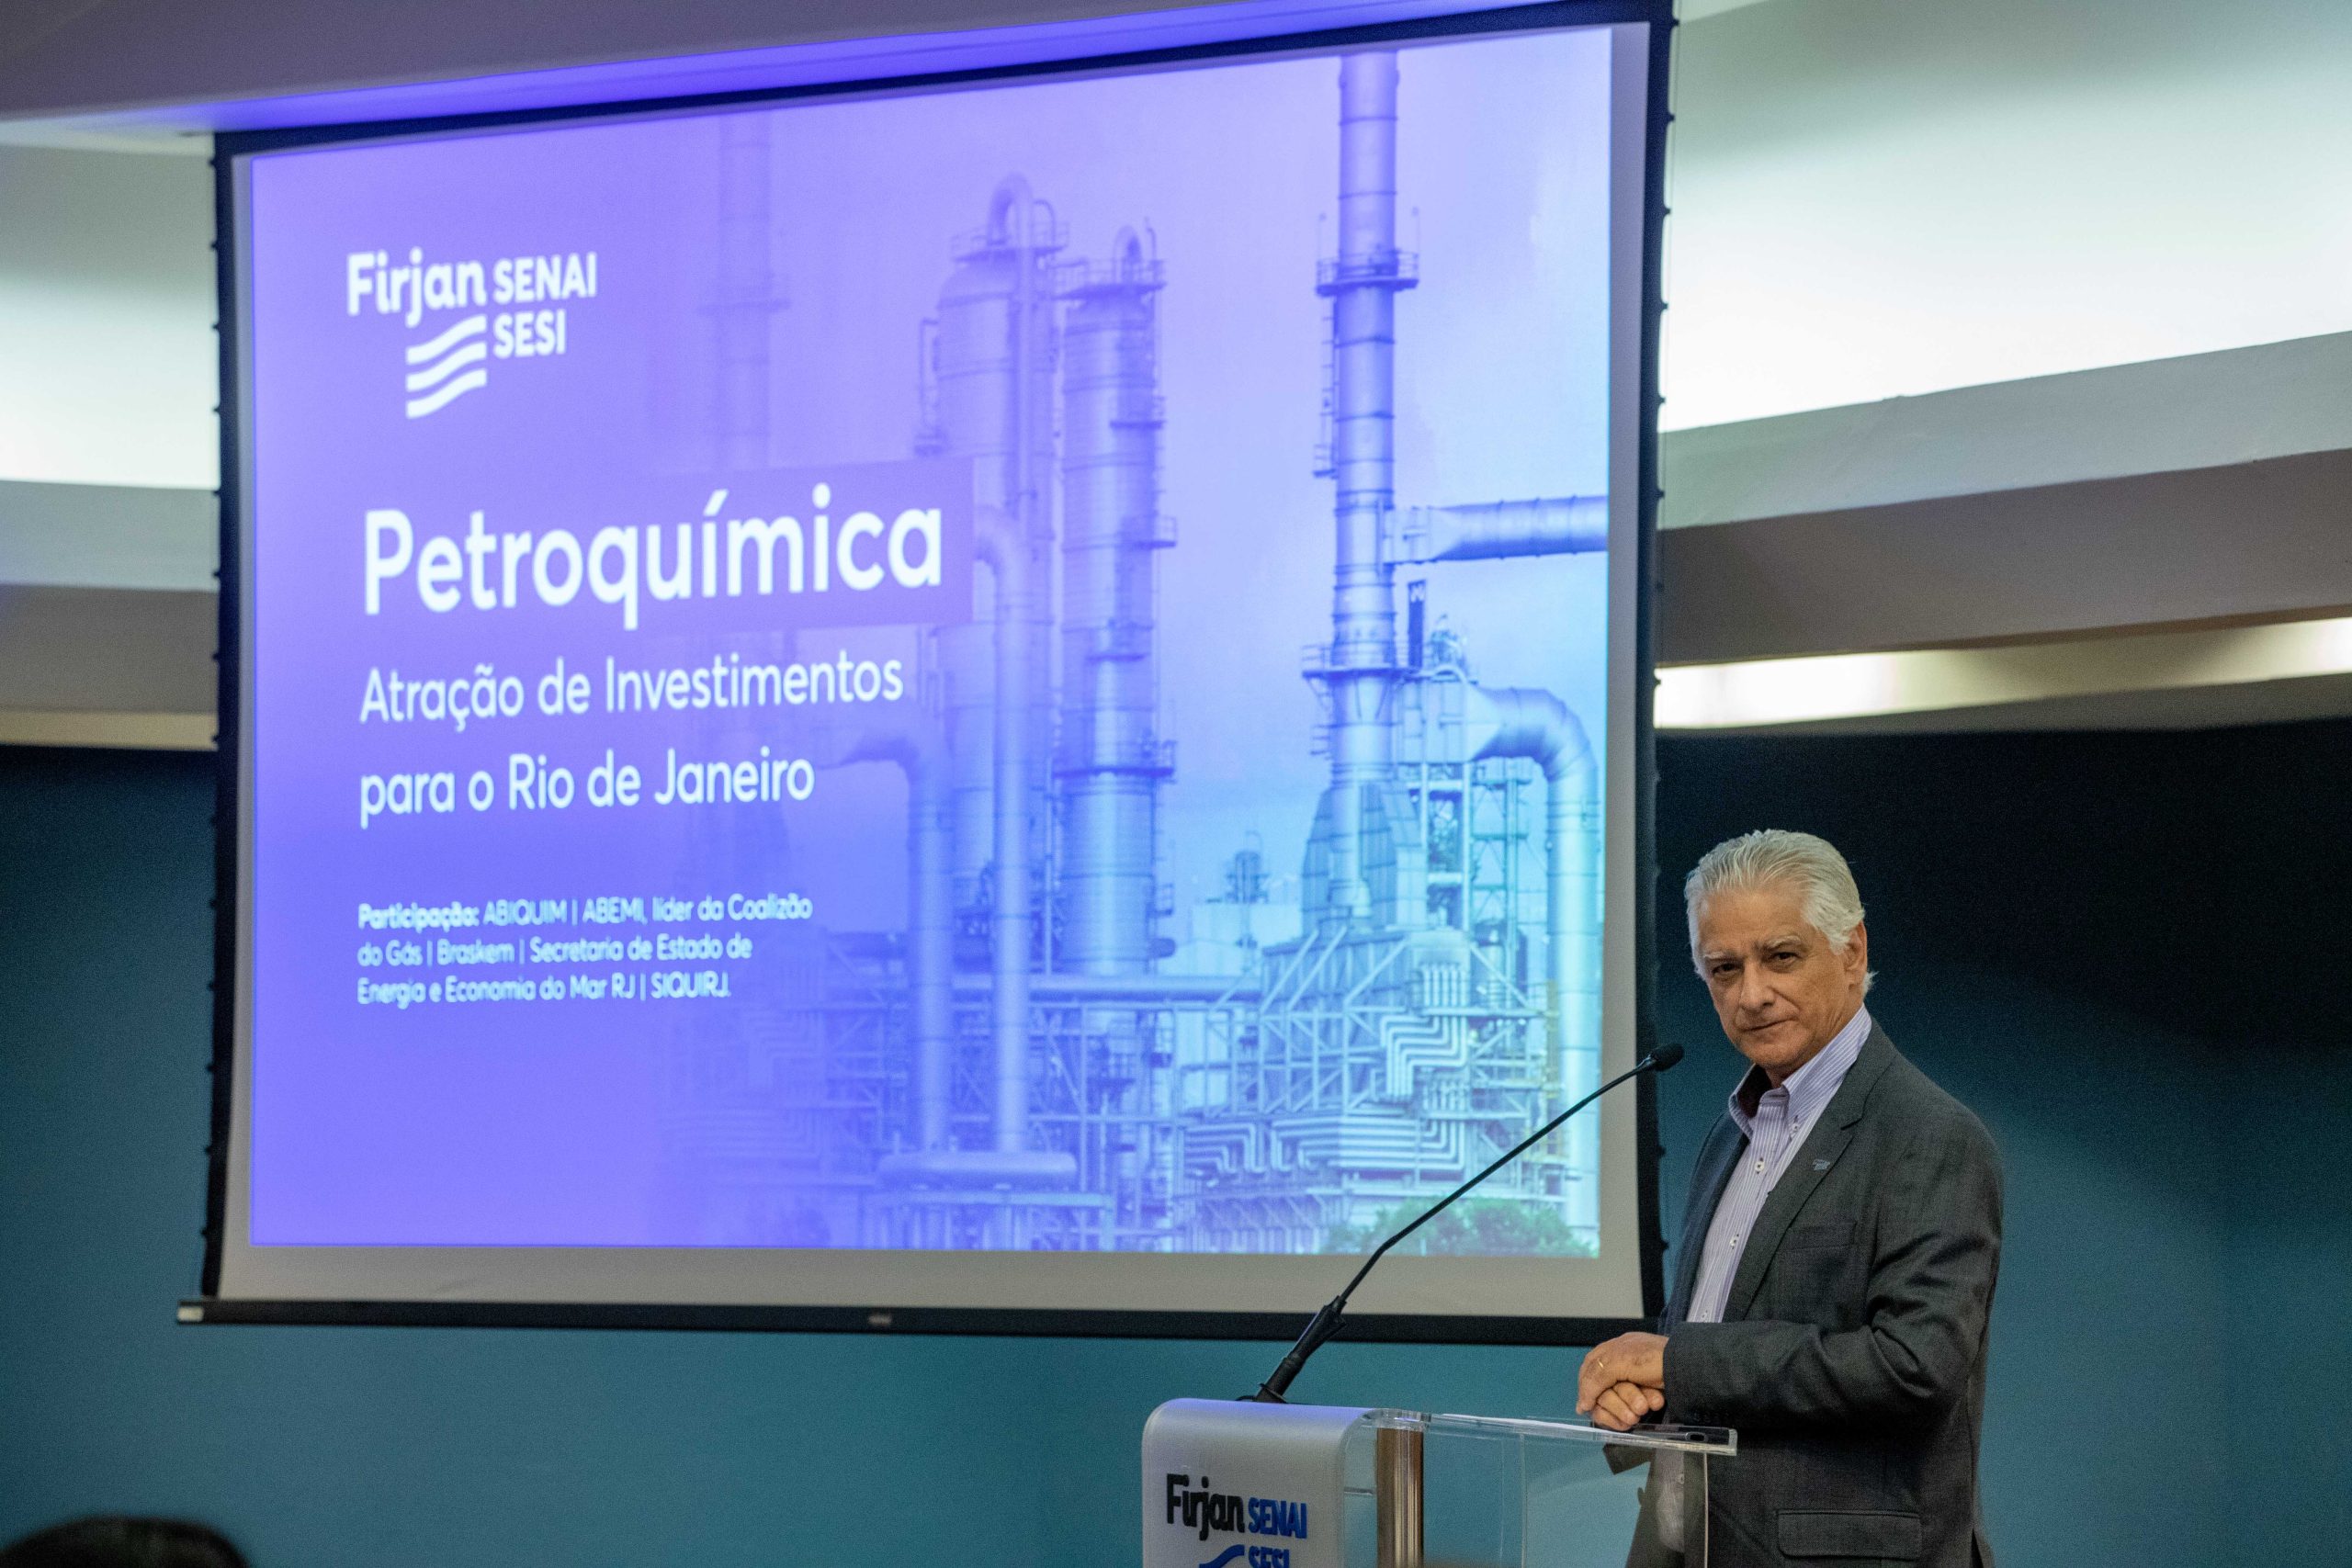 Setor Energético: Firjan quer Rio de Janeiro como hub petroquímico e de fertilizantes